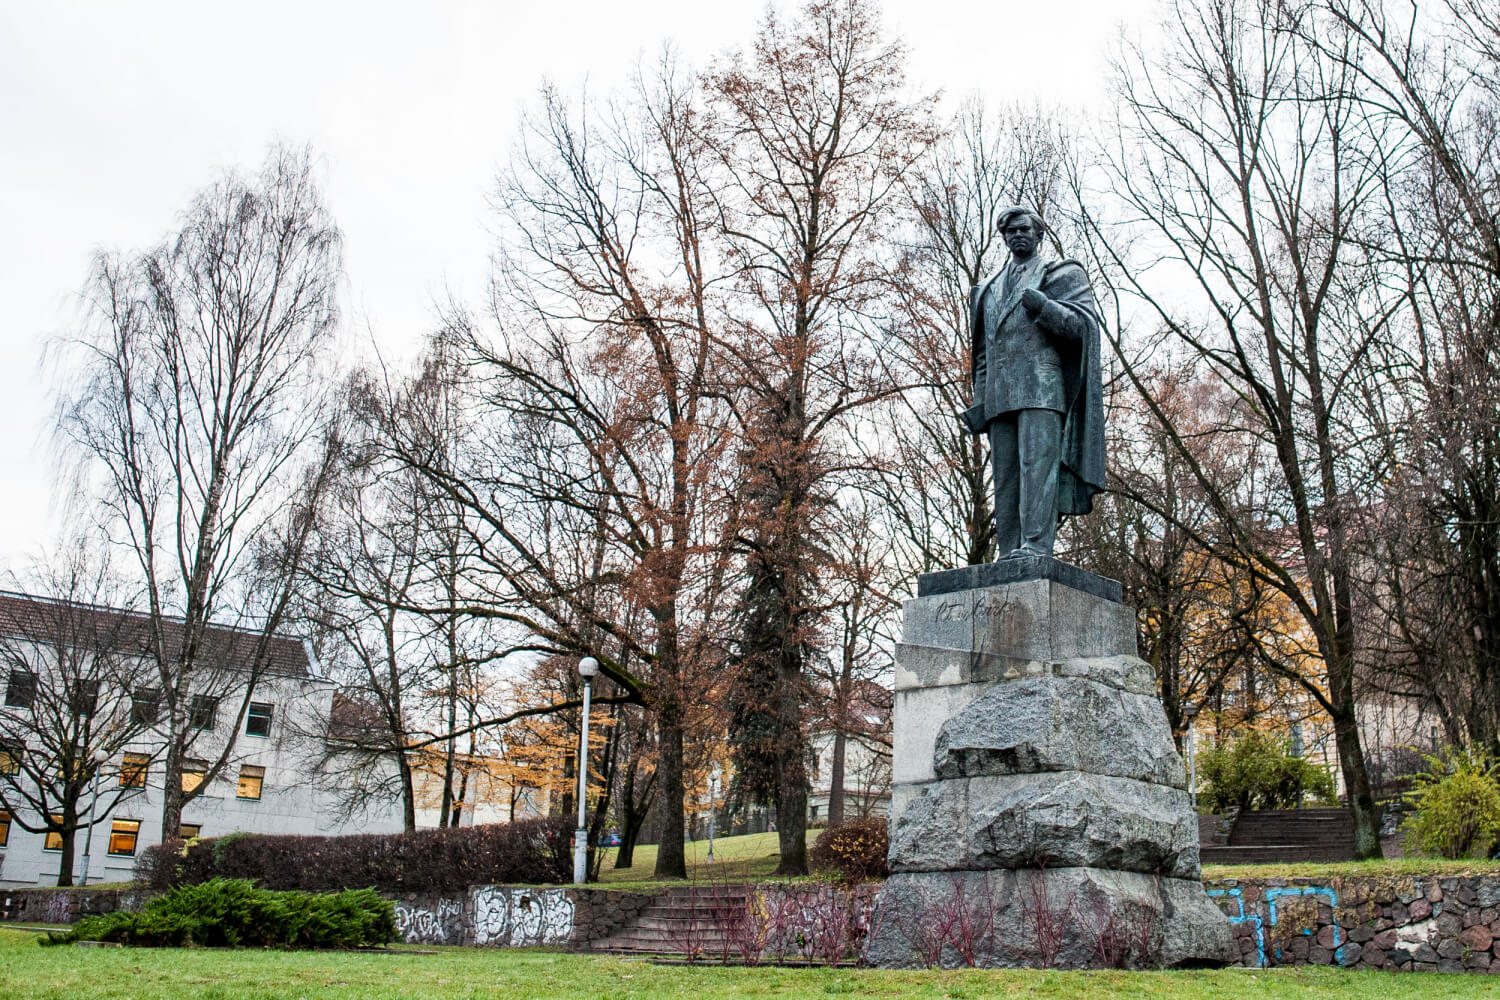 Vilniaus savivaldybės komisija siūlo nukelti sostinės centre stovintį rašytojo Petro Cvirkos paminklą dėl jo vaidmens įtvirtinant sovietų okupaciją.